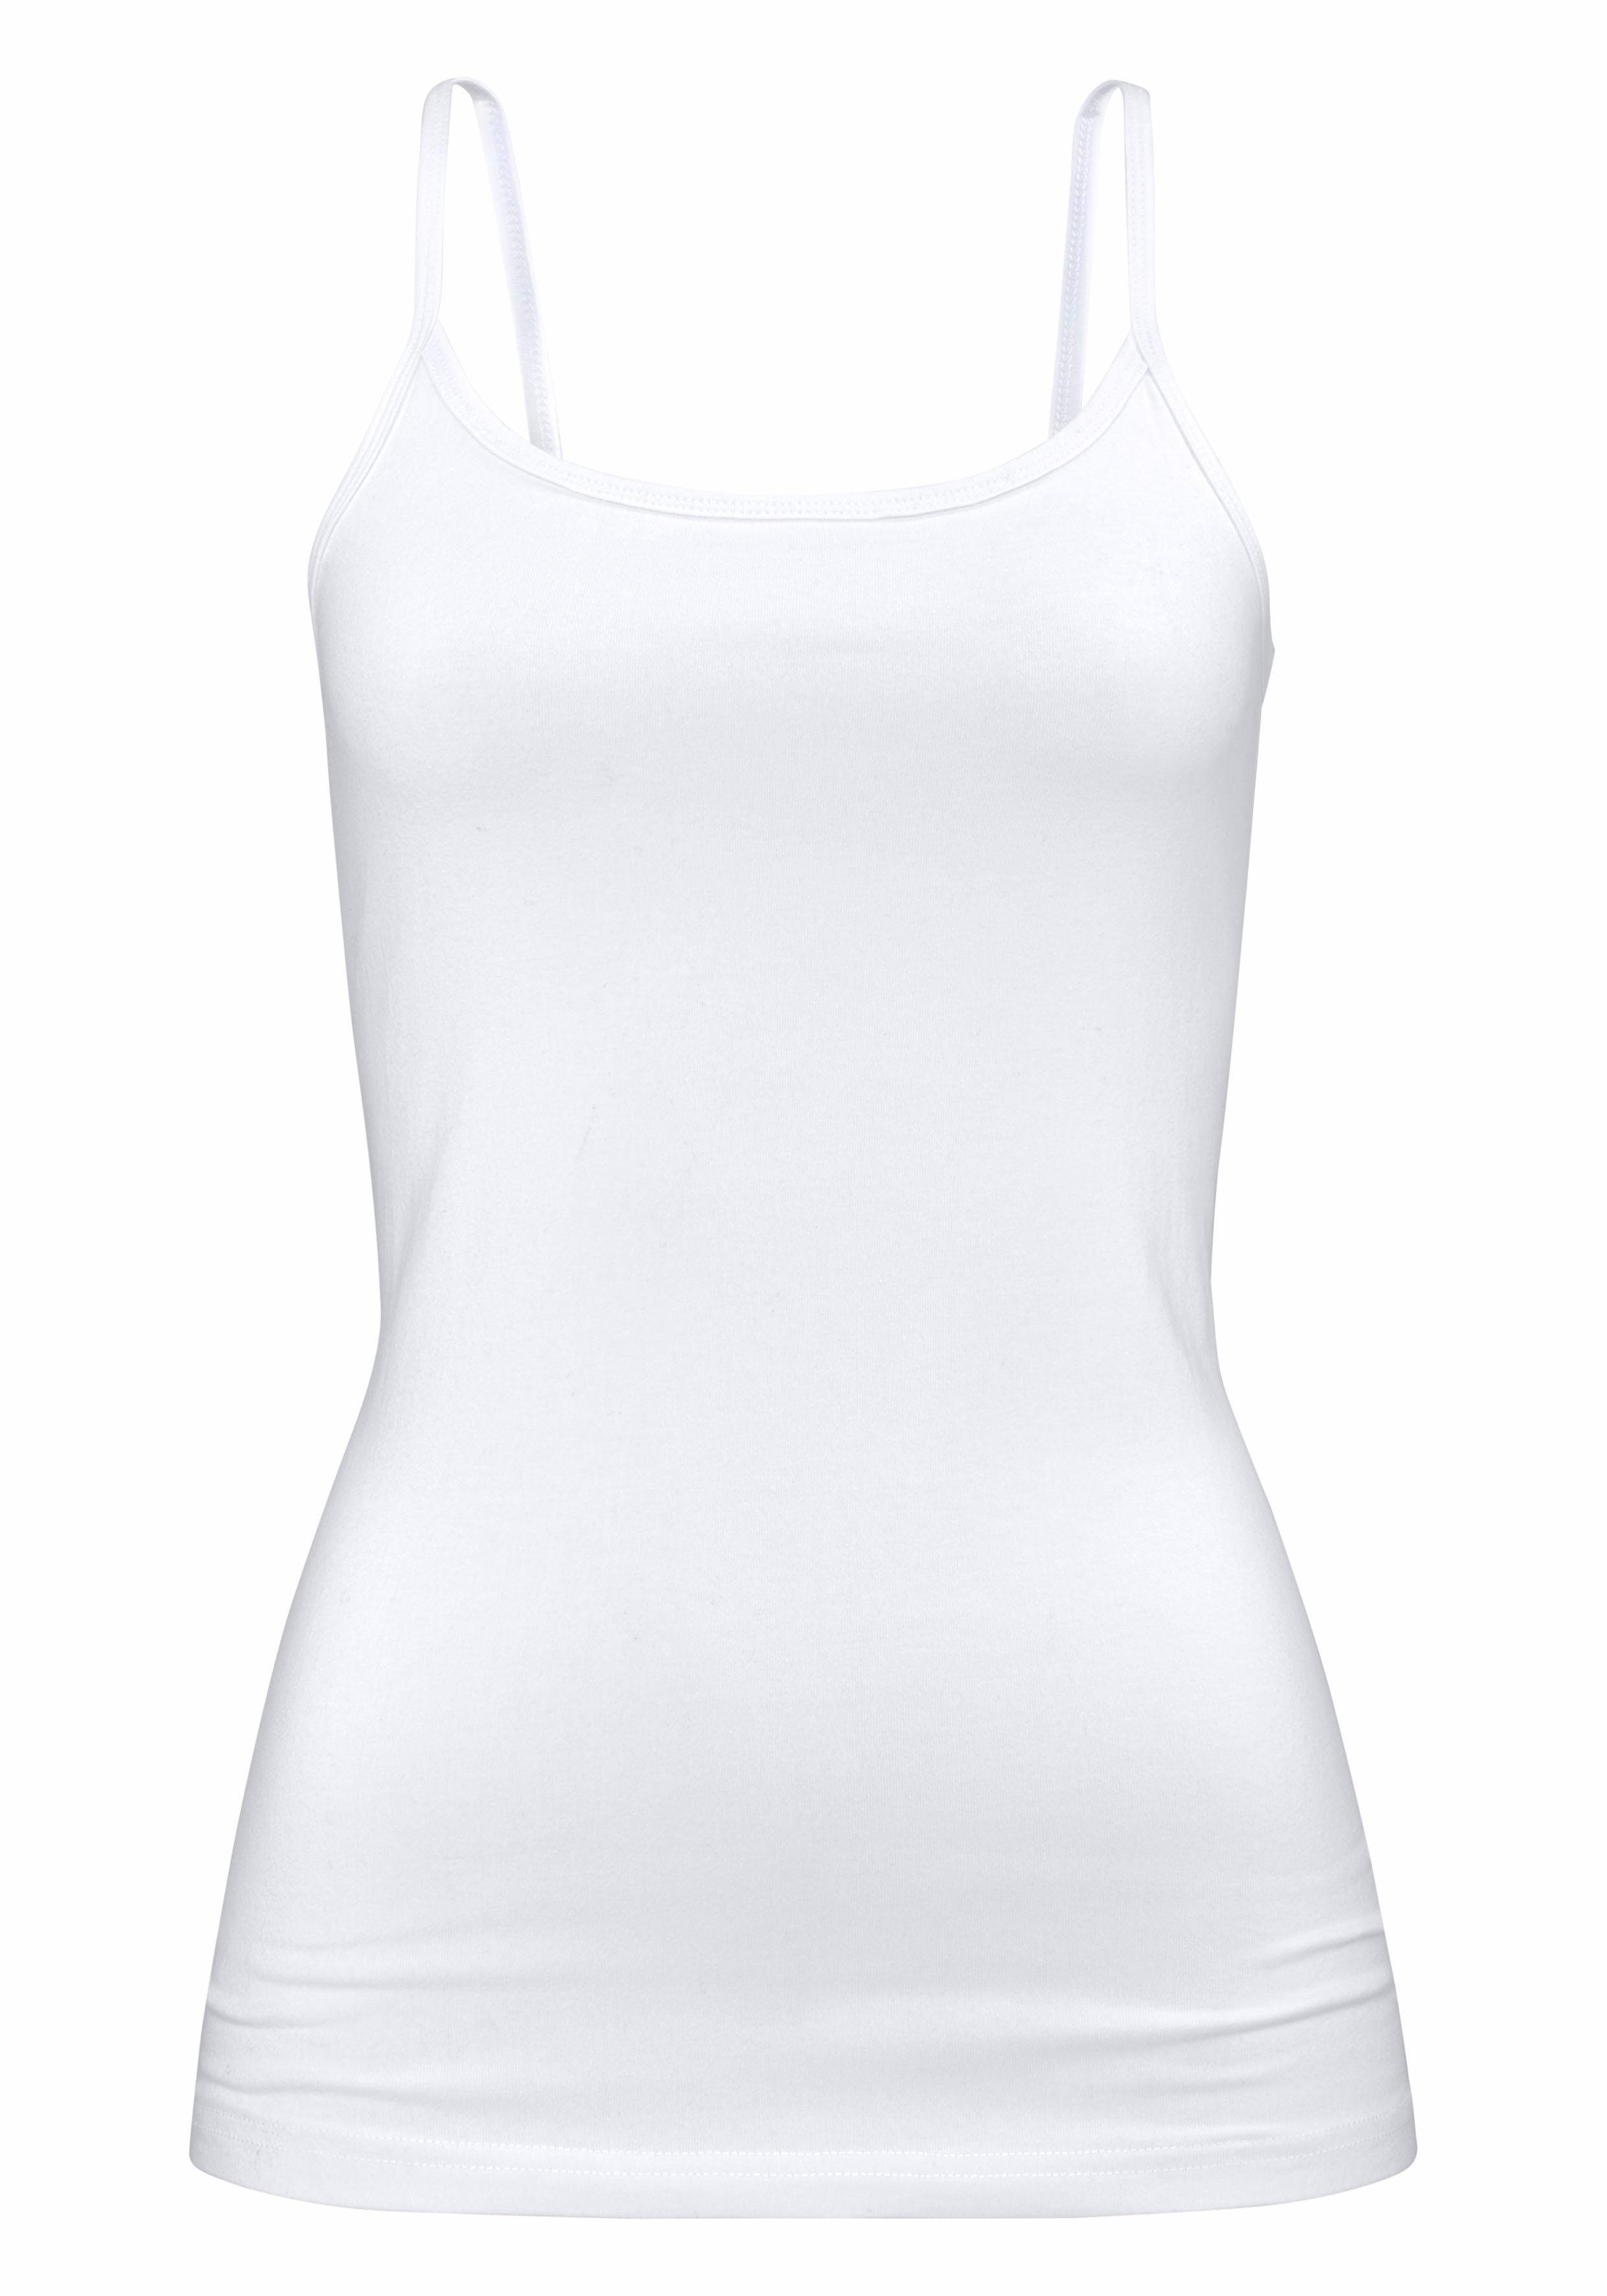 Unterhemd aus Unterziehshirt (2er-Pack) elastischer weiß marine, Baumwoll-Qualität, H.I.S Spaghettiträger-Top,